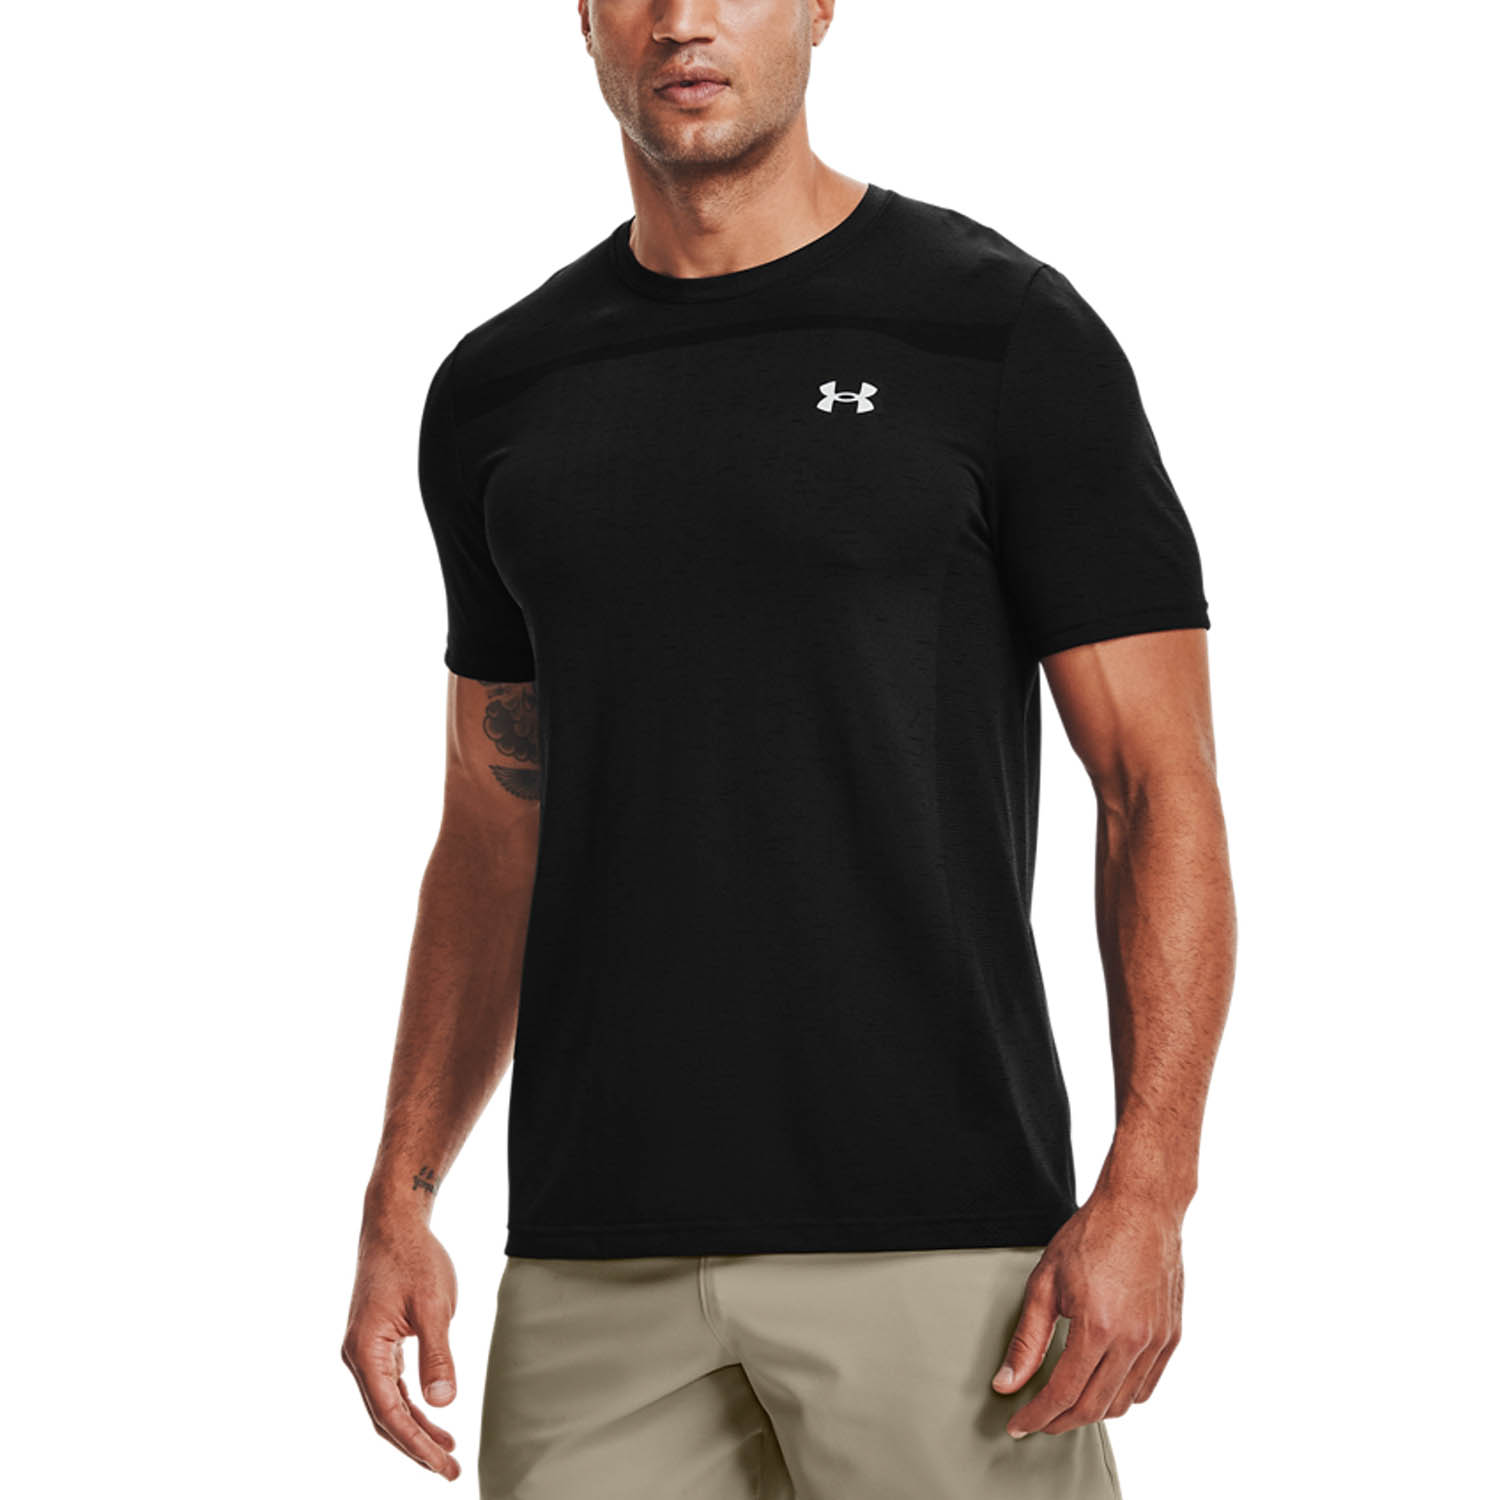 Santuario Reproducir Aviación Under Armour Seamless Camiseta de Tenis Hombre - Black